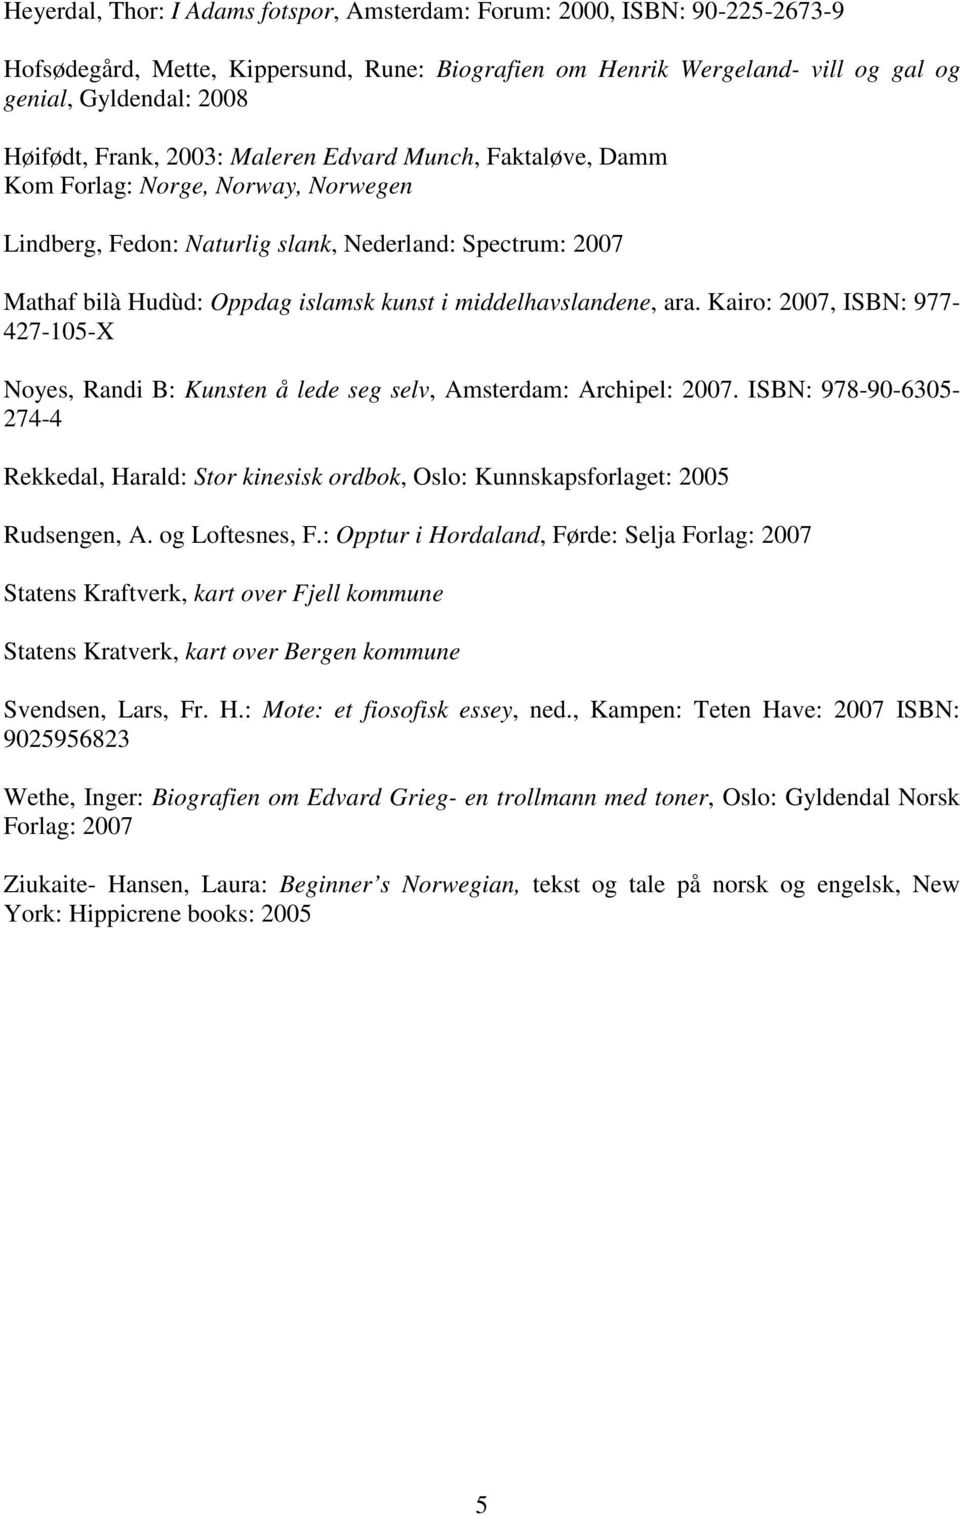 middelhavslandene, ara. Kairo: 2007, ISBN: 977-427-105-X Noyes, Randi B: Kunsten å lede seg selv, Amsterdam: Archipel: 2007.